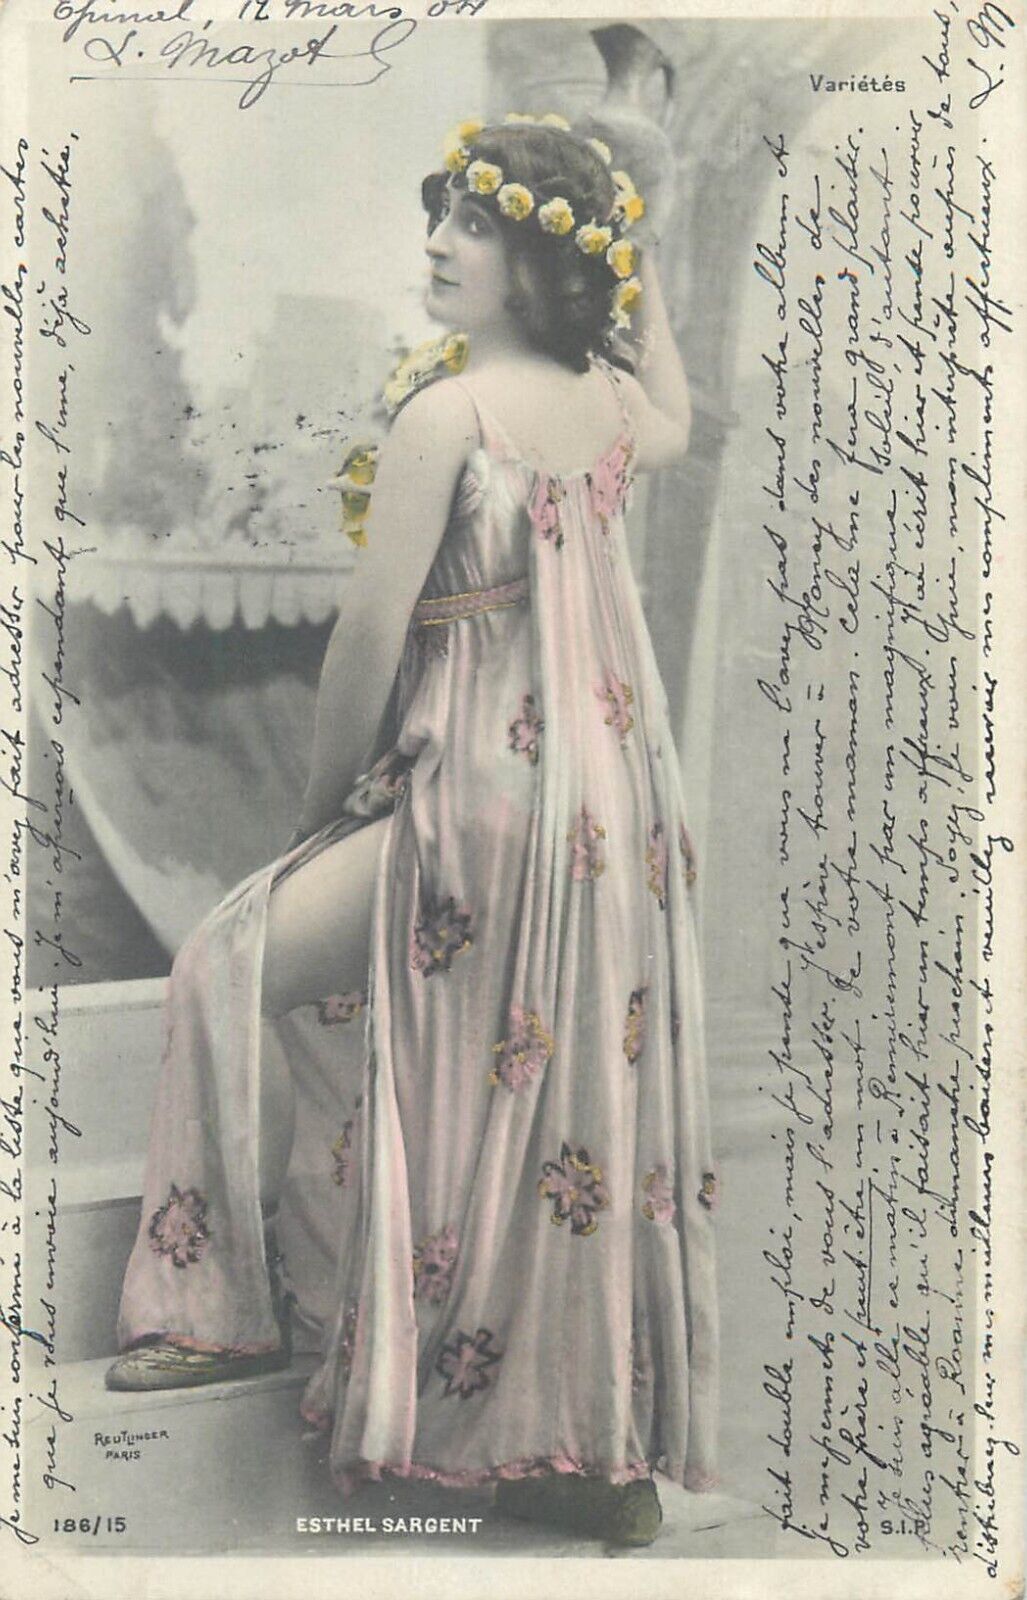 Parisian Belle Epoque Theatre & Opera glamor female starlet Esthel Sargent 1904